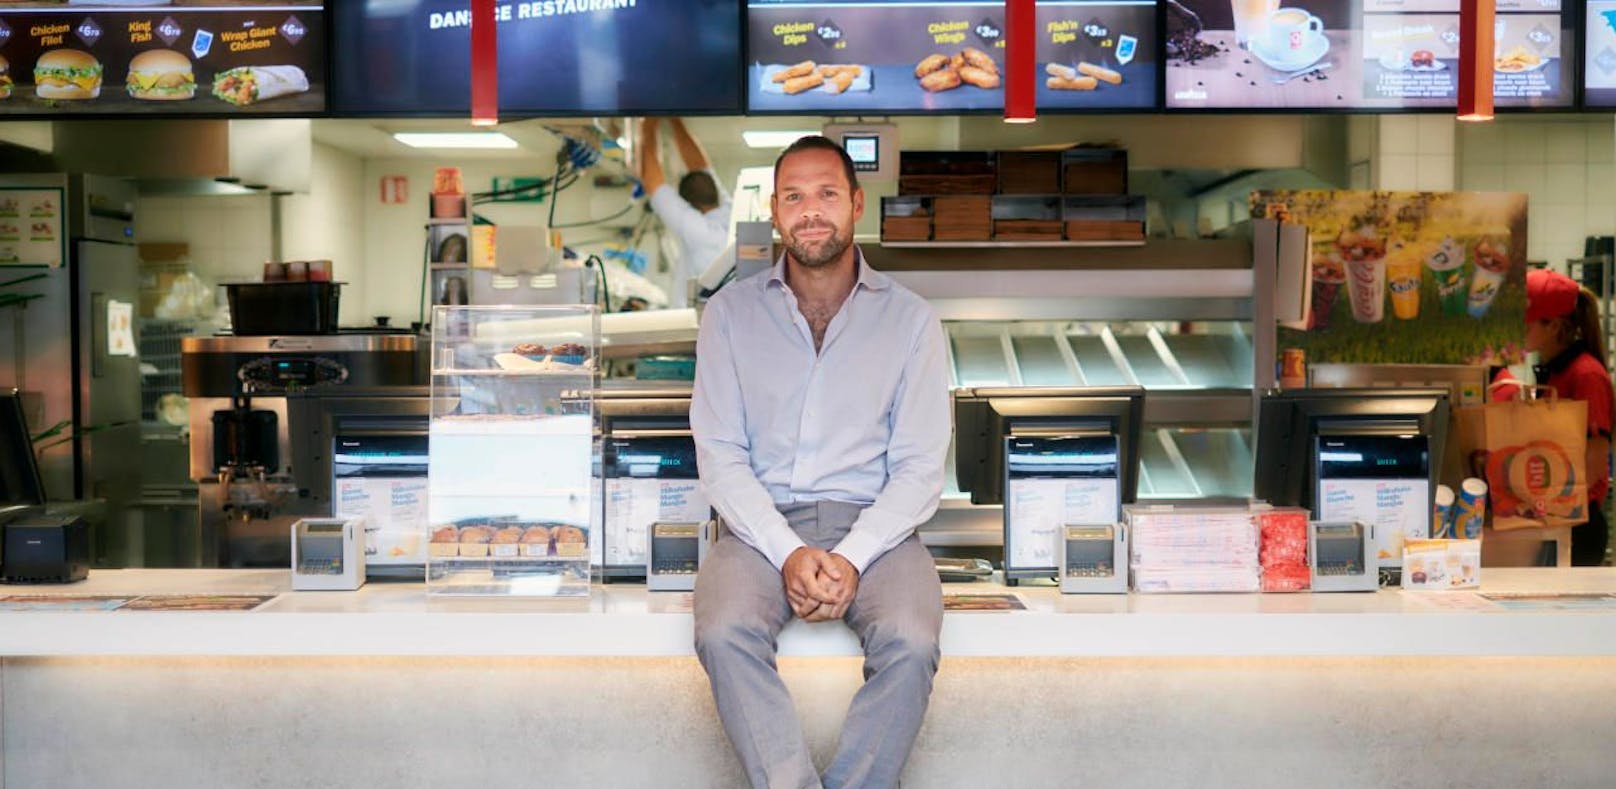 Er eckt beim Königshaus an: Daniel Grossmann, der Gründer der Fast-Food-Kette Quick und nun Geschäftsführer von Burger King in Belgien.